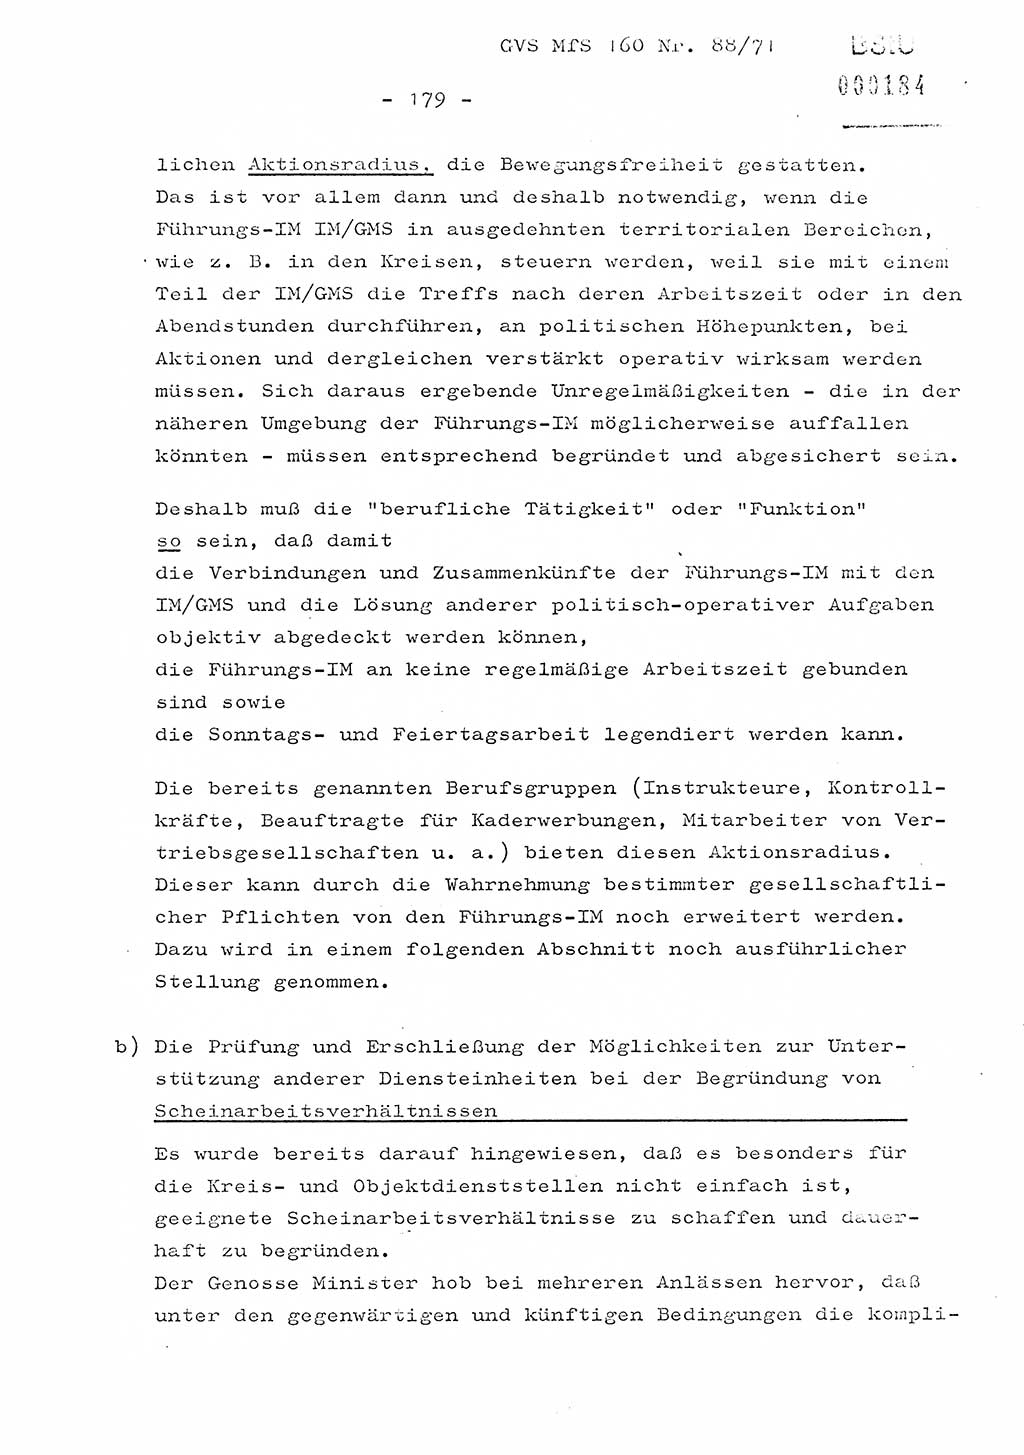 Dissertation Oberstleutnant Josef Schwarz (BV Schwerin), Major Fritz Amm (JHS), Hauptmann Peter Gräßler (JHS), Ministerium für Staatssicherheit (MfS) [Deutsche Demokratische Republik (DDR)], Juristische Hochschule (JHS), Geheime Verschlußsache (GVS) 160-88/71, Potsdam 1972, Seite 179 (Diss. MfS DDR JHS GVS 160-88/71 1972, S. 179)